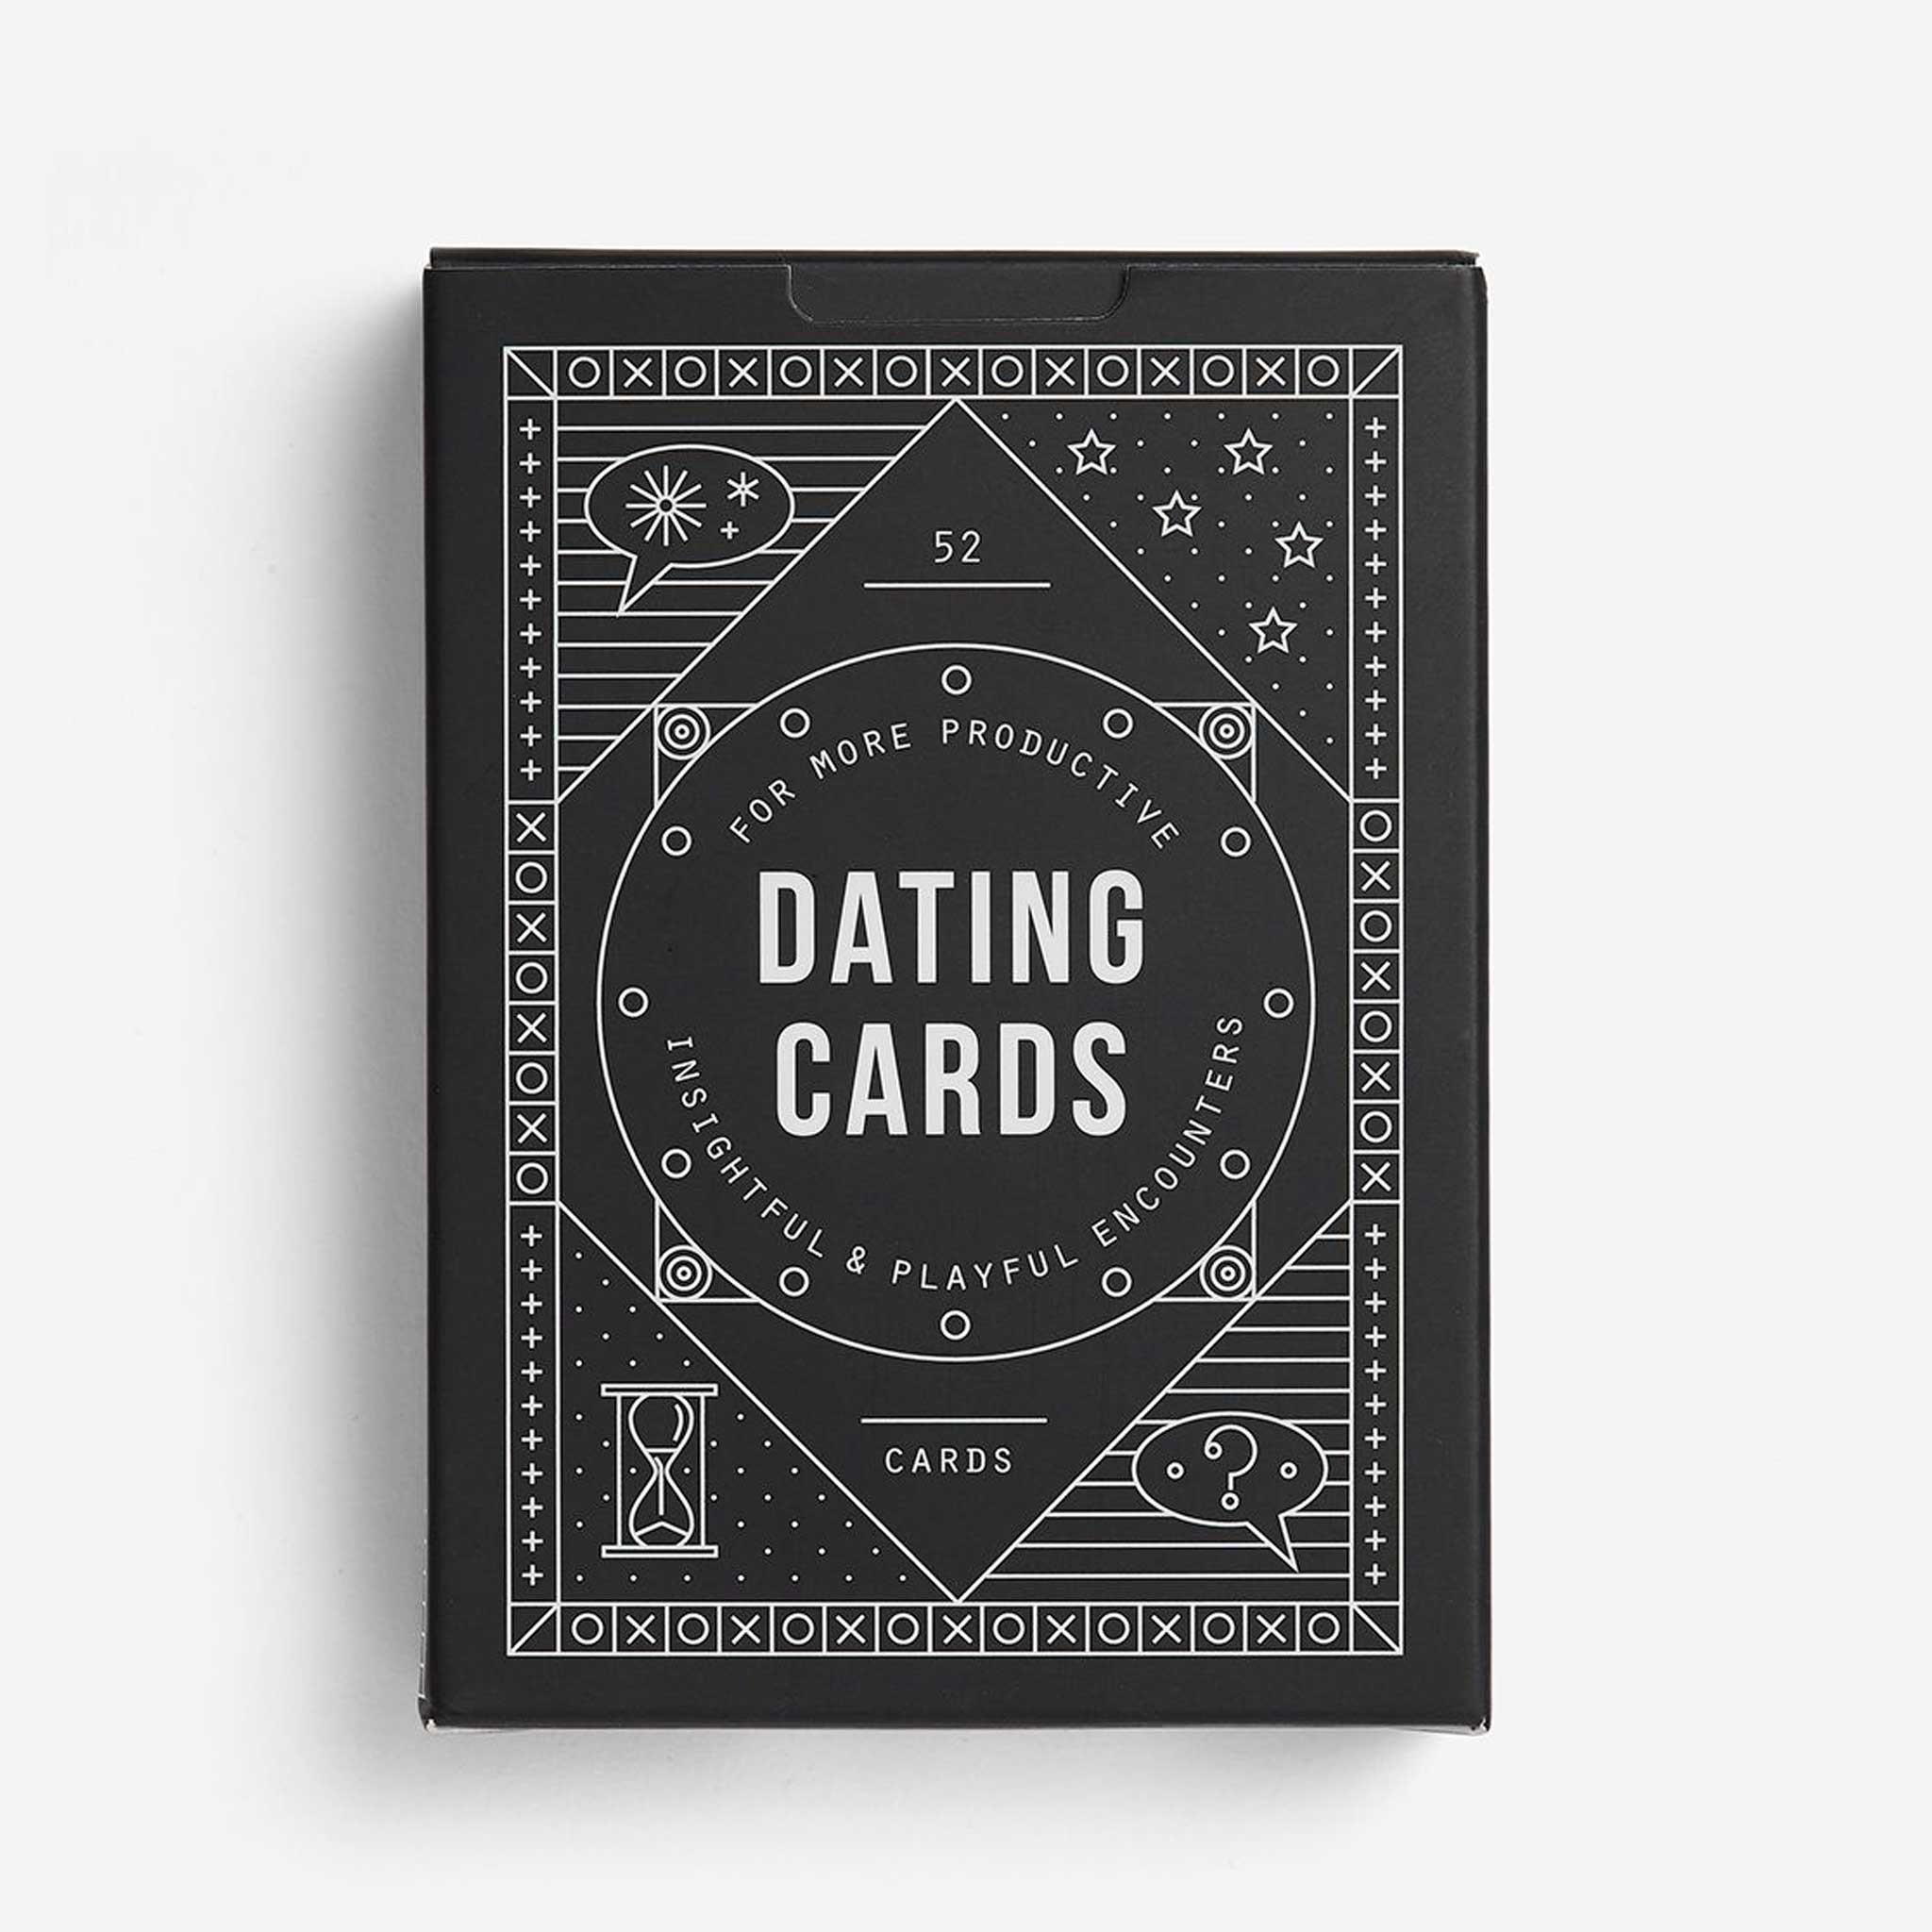 DATING CARDS | KARTENSPIEL für besseres DATING | Englische Edition | The School of Life